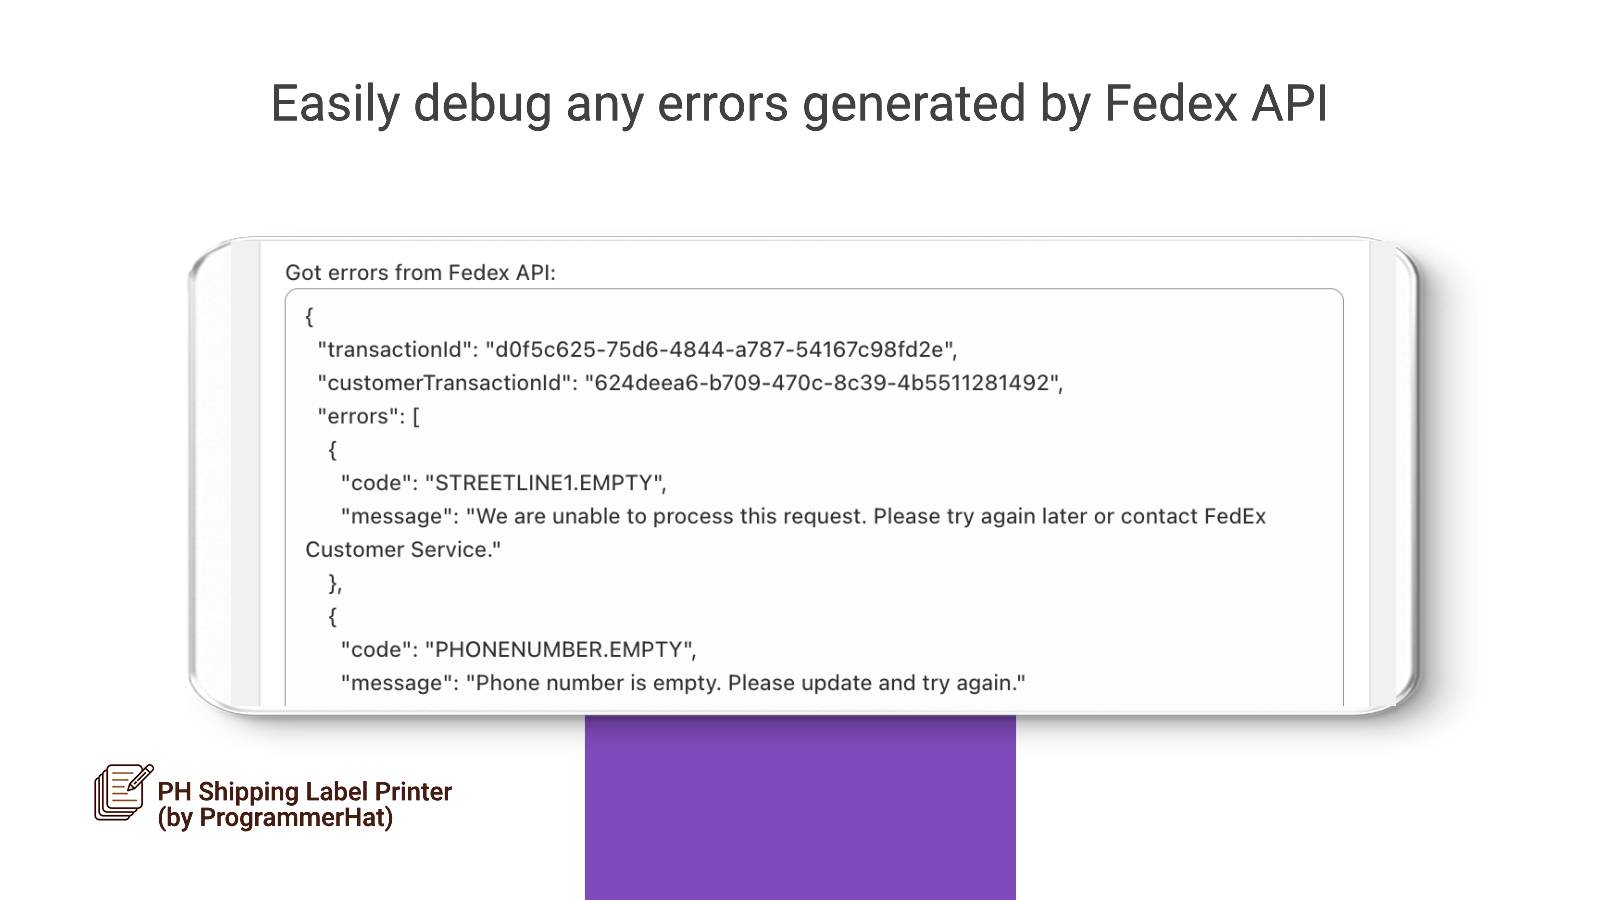 Fejlfind nemt eventuelle fejl returneret af Fedex API.